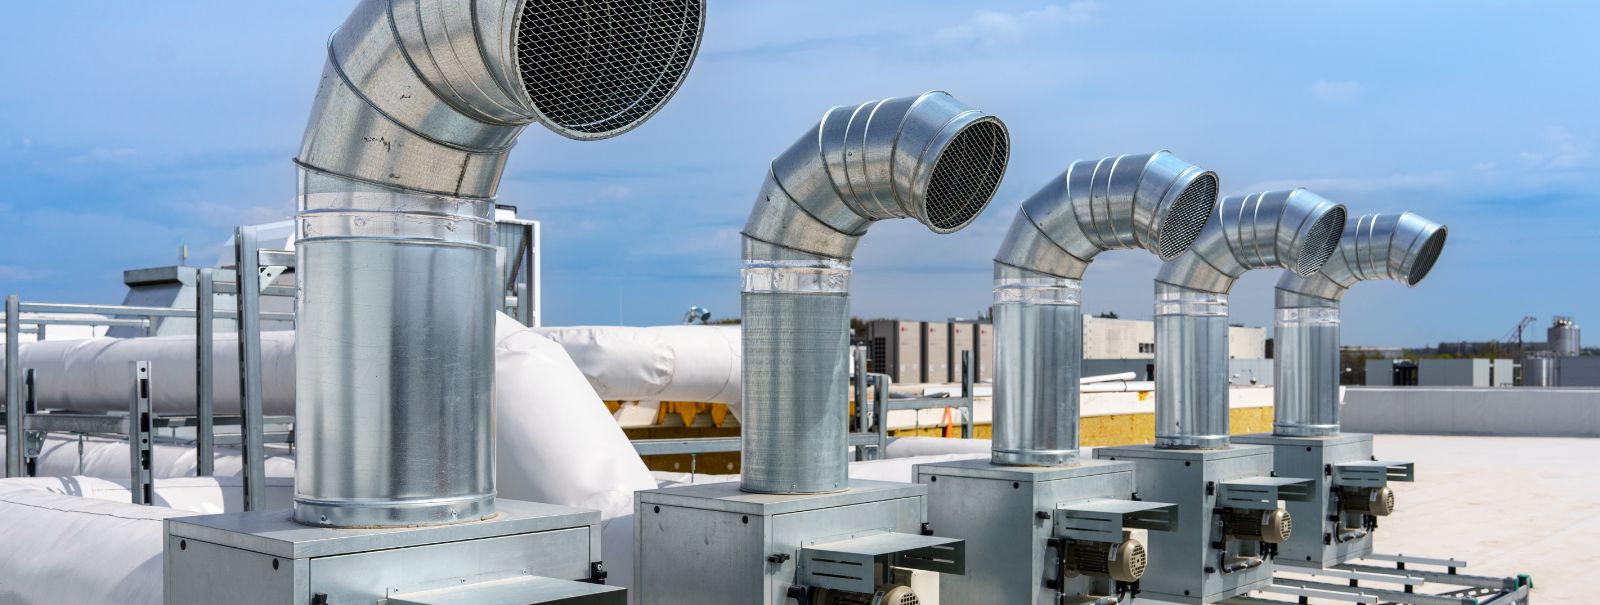 Ventilatsioonisüsteemi automaatika hõlmab edasijõudnud juhtimissüsteemide kasutamist hoone õhuvoolu, temperatuuri ja niiskustaseme reguleerimiseks. Tehnoloogiat